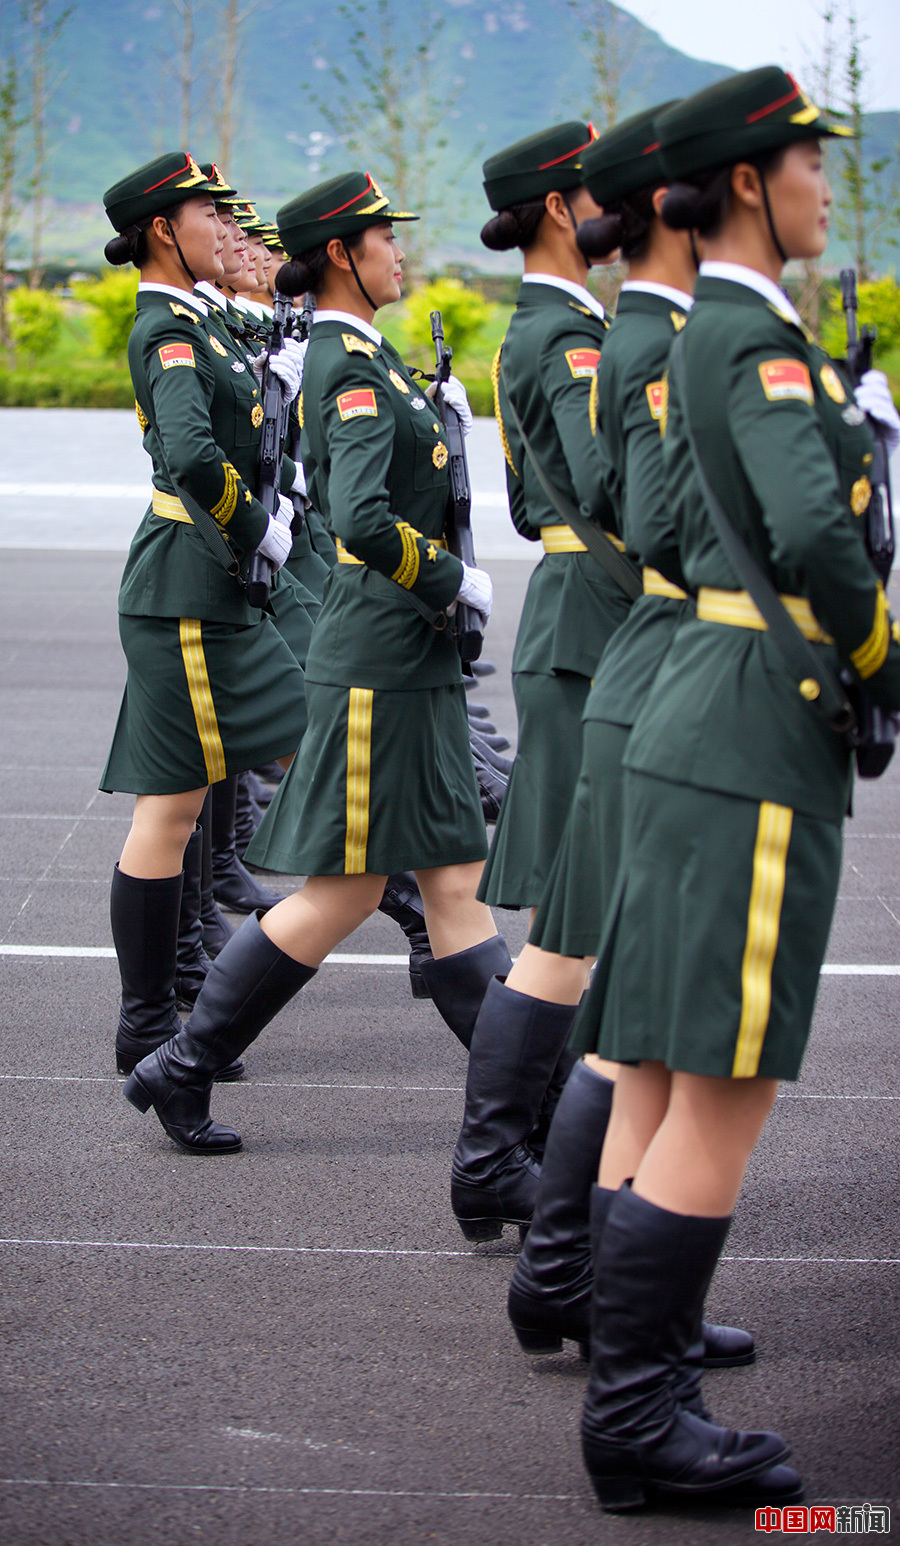 女兵 スイス軍、女性兵に女性用下着を供給へ これまでは男性用のみ ...